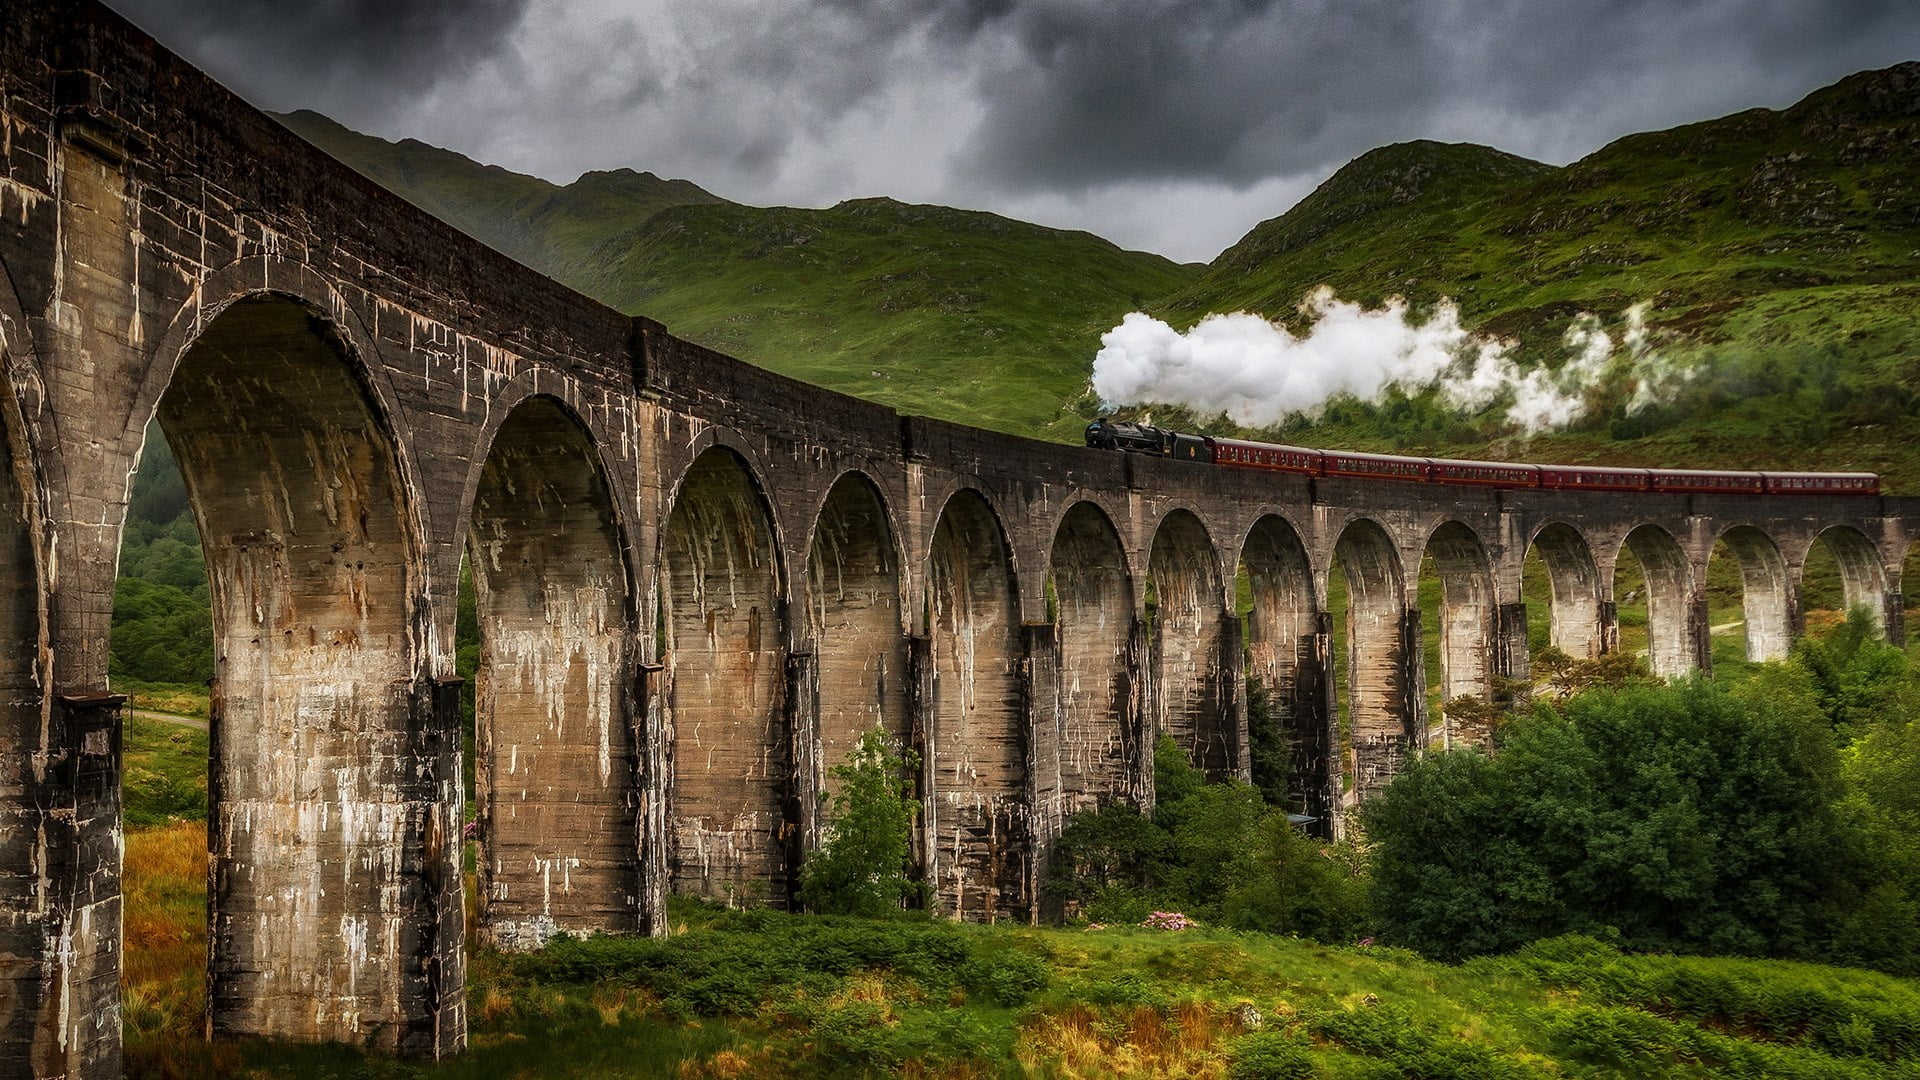 cloud, photography, landscape, cloudy, train, steam locomotive